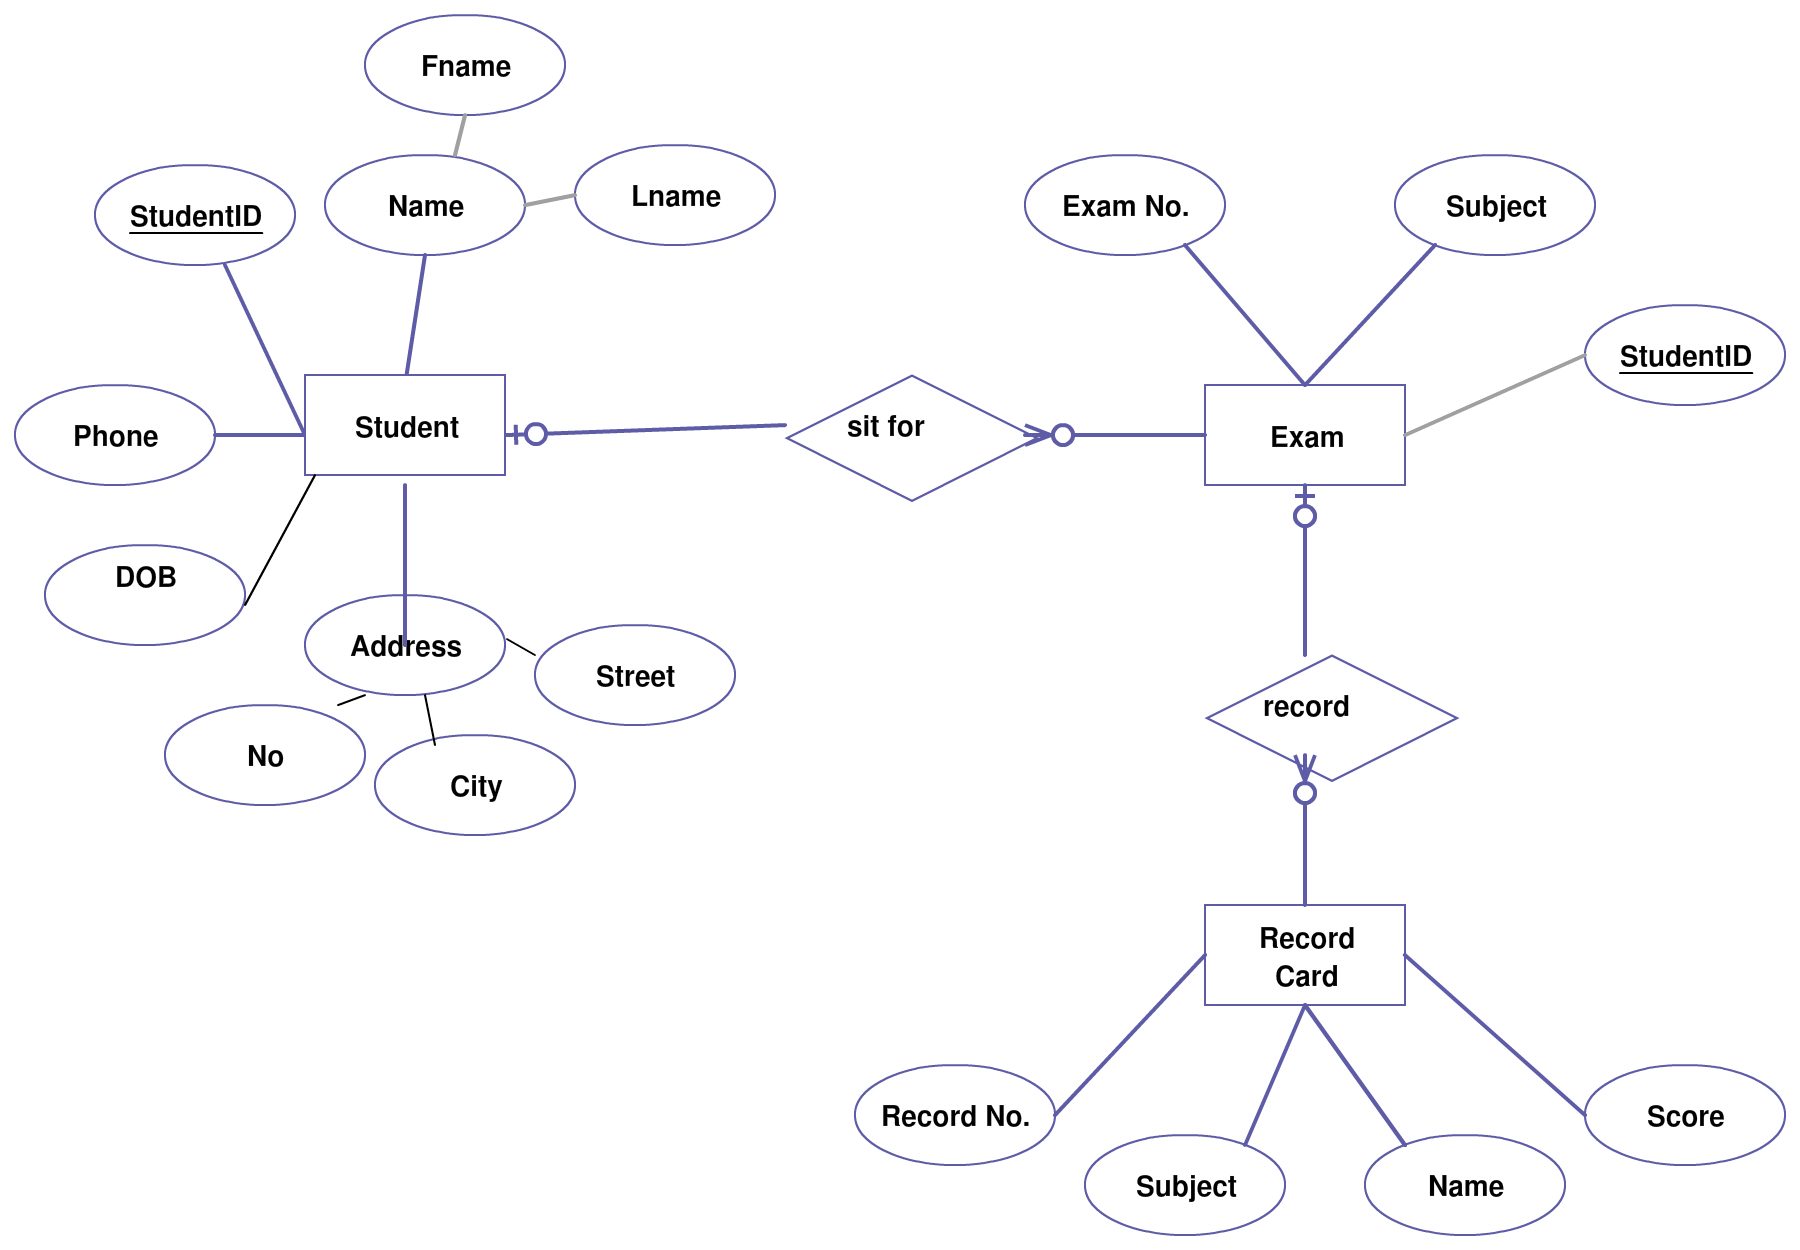 Entity Relationship Diagram (Er Diagram) Of Student regarding Database Management System Entity Relationship Model